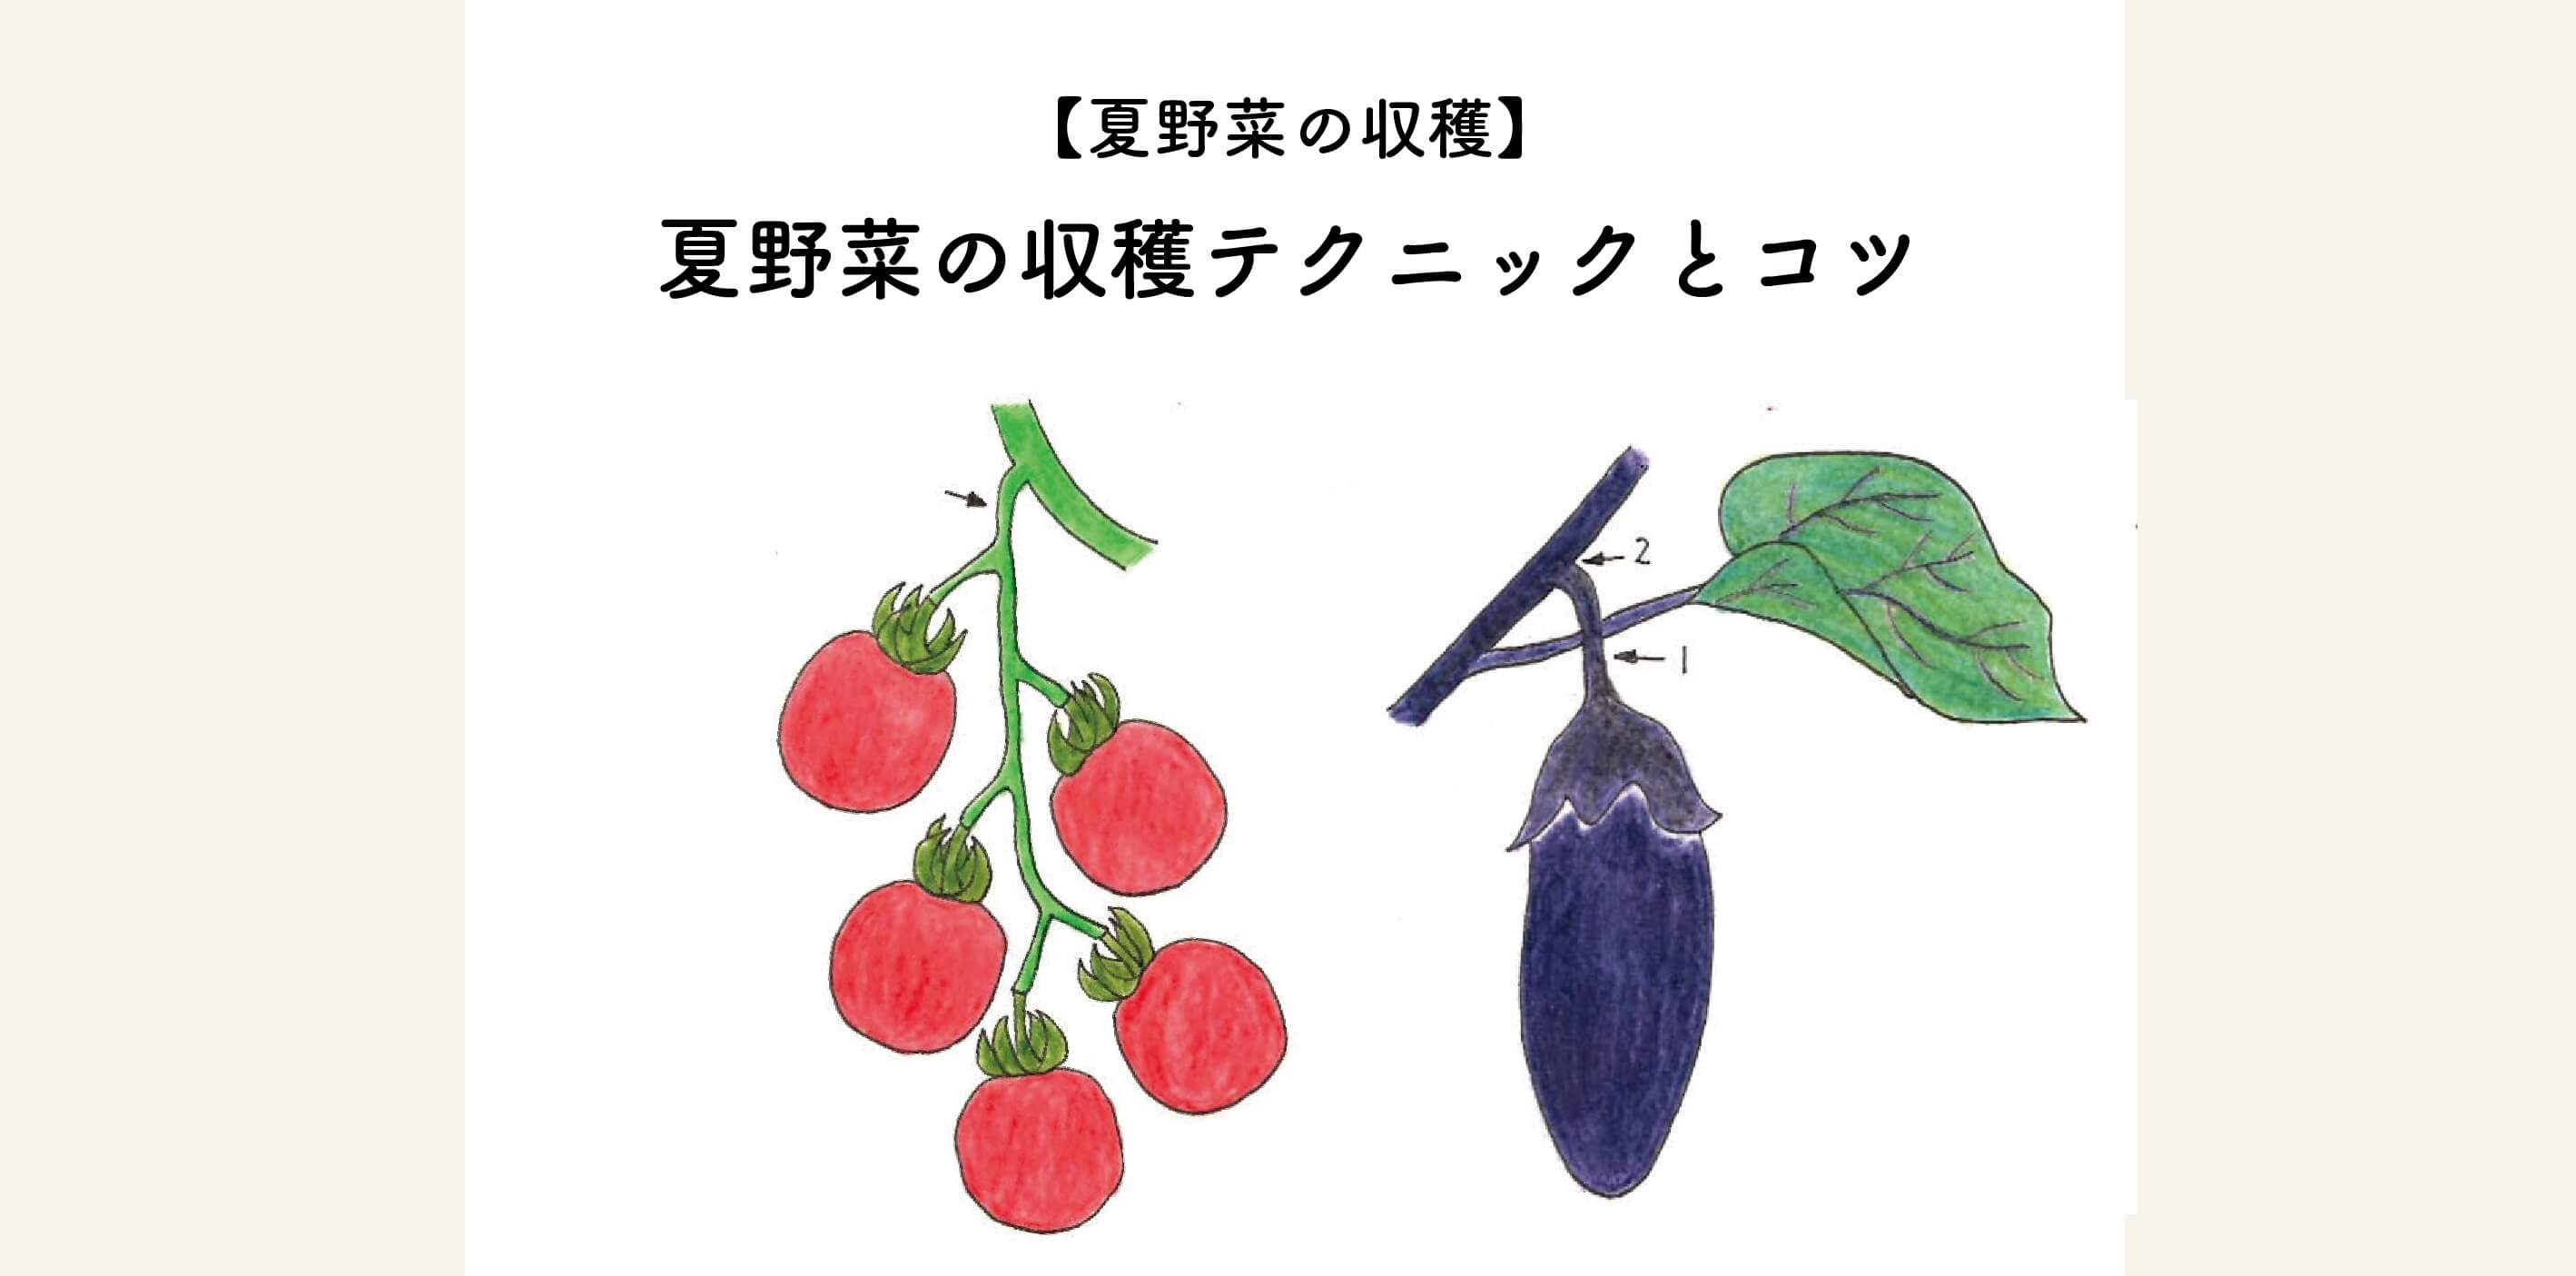 【夏野菜の収穫】トマト・キュウリ・ナスの収獲テクニックとコツをご紹介